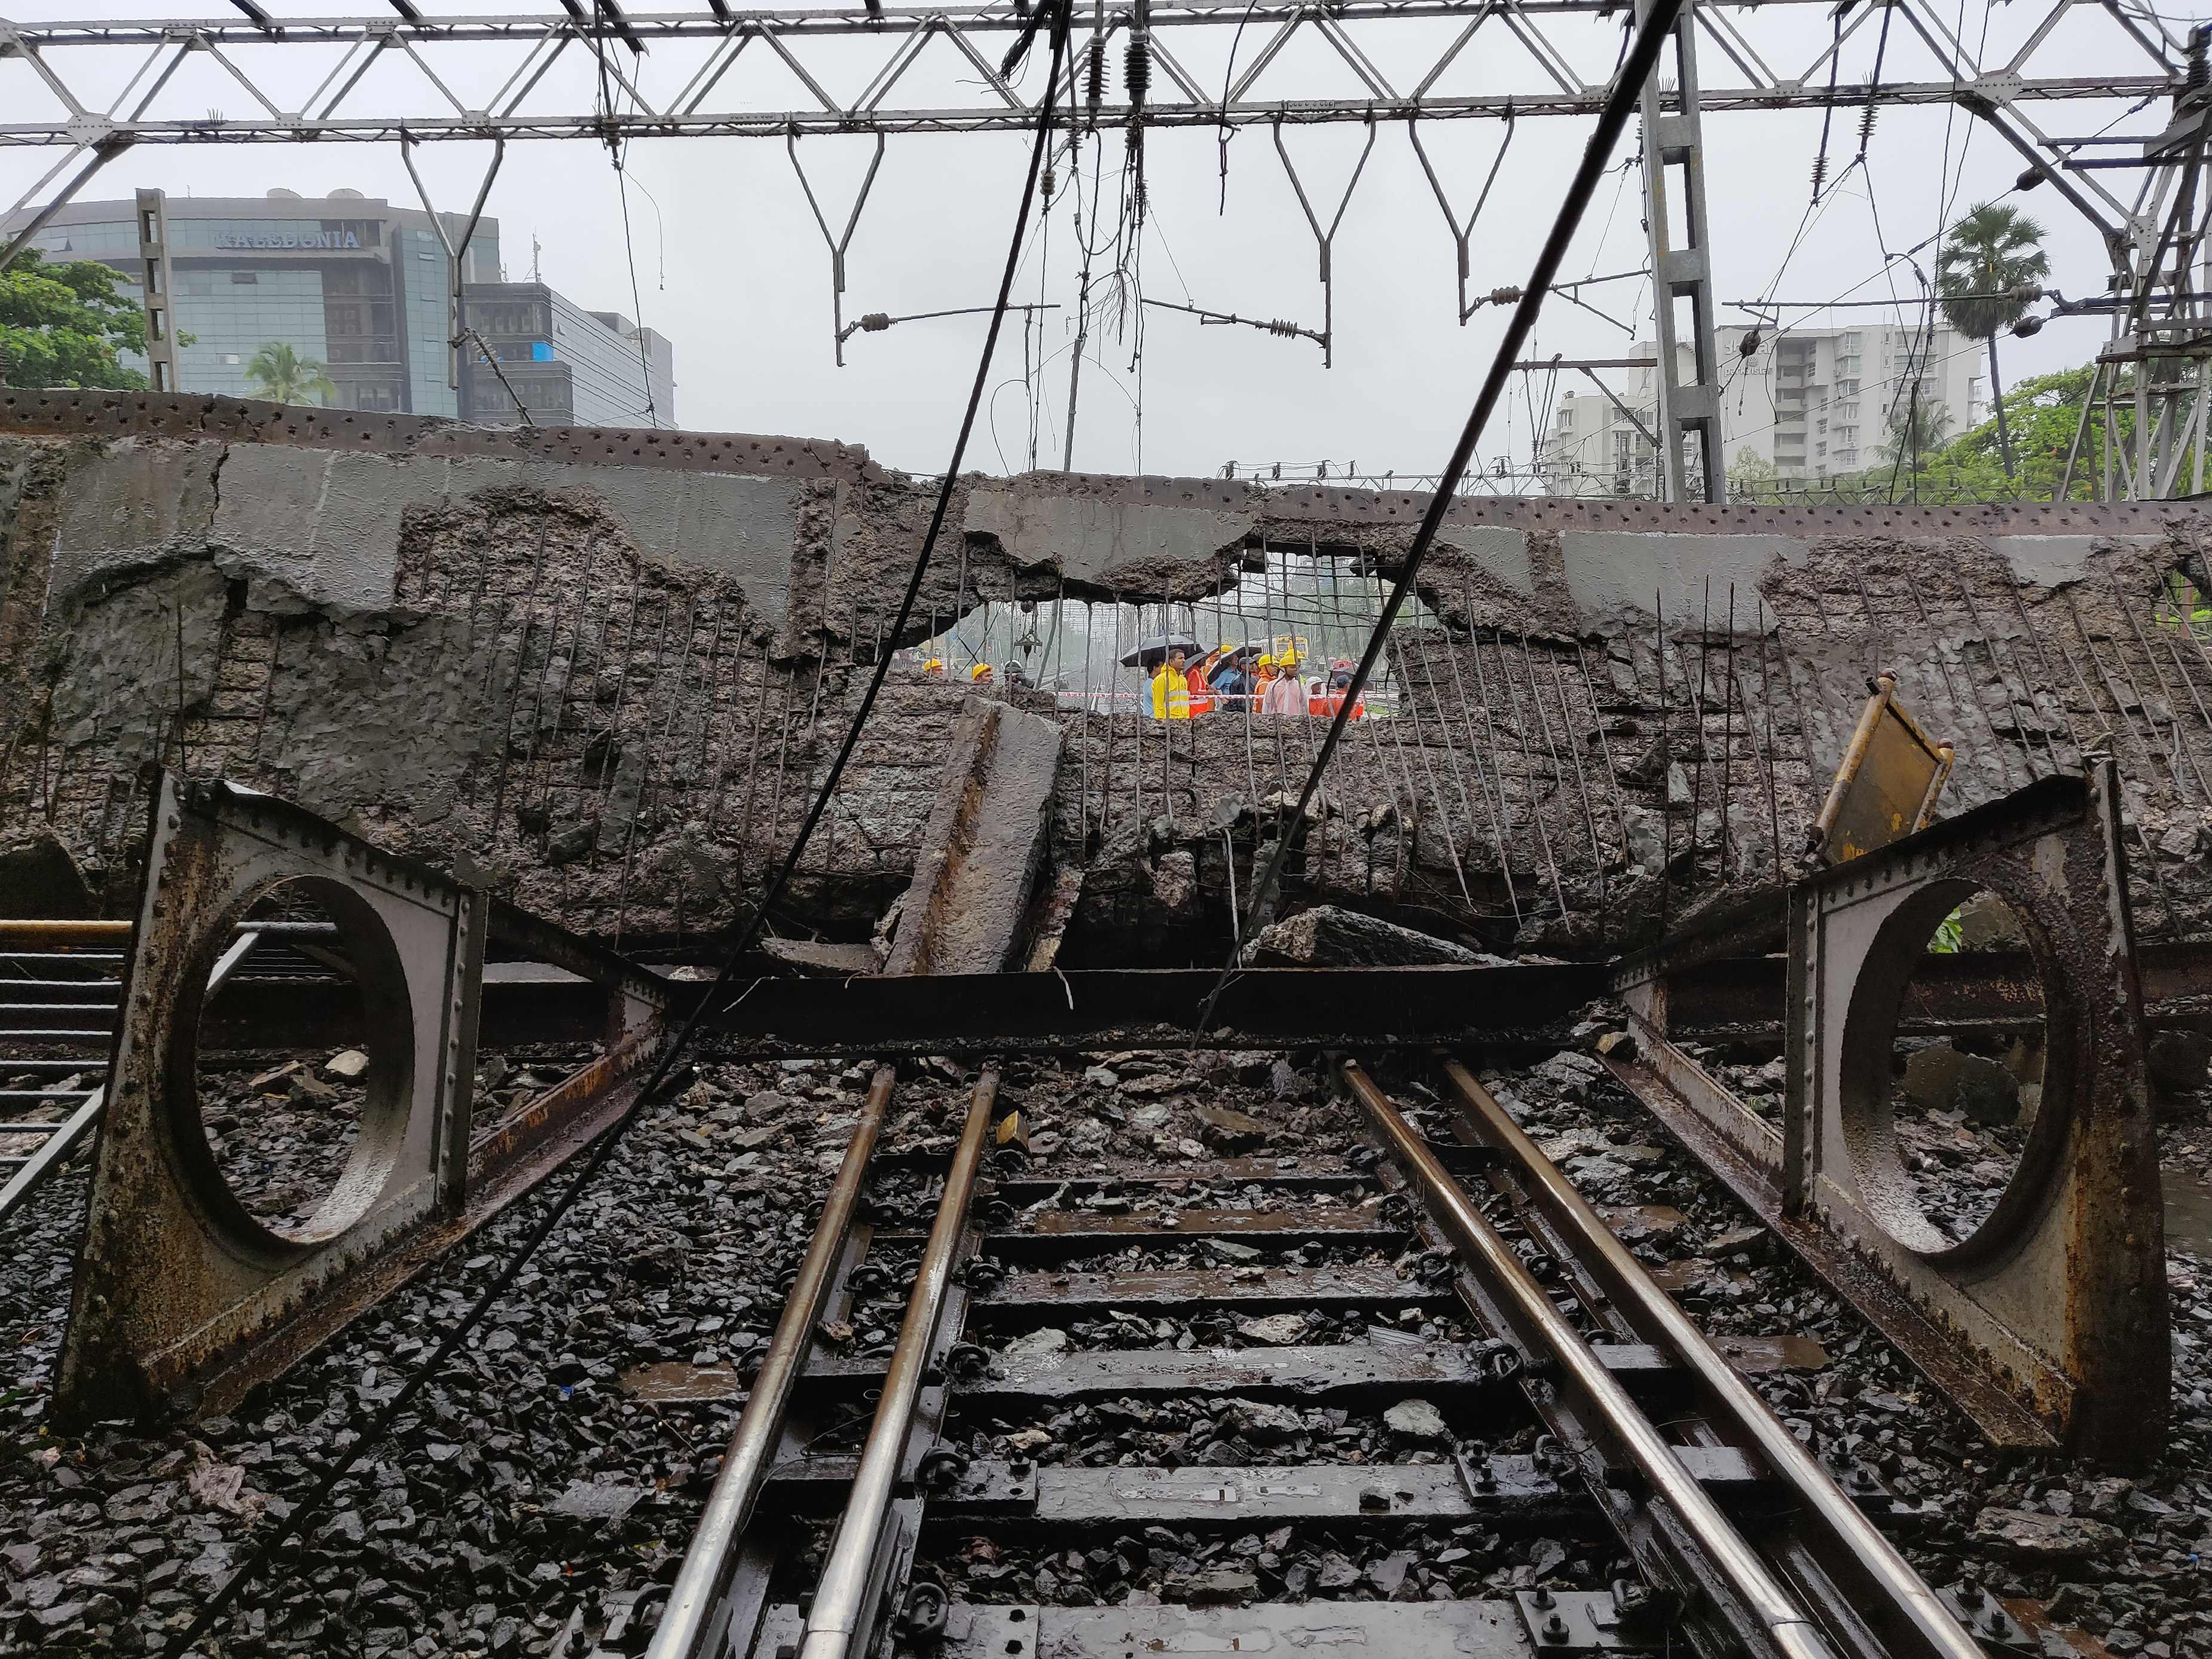 الأمطار الغزيرة تسقط جسر على خط للسكك الحديدية بالهند